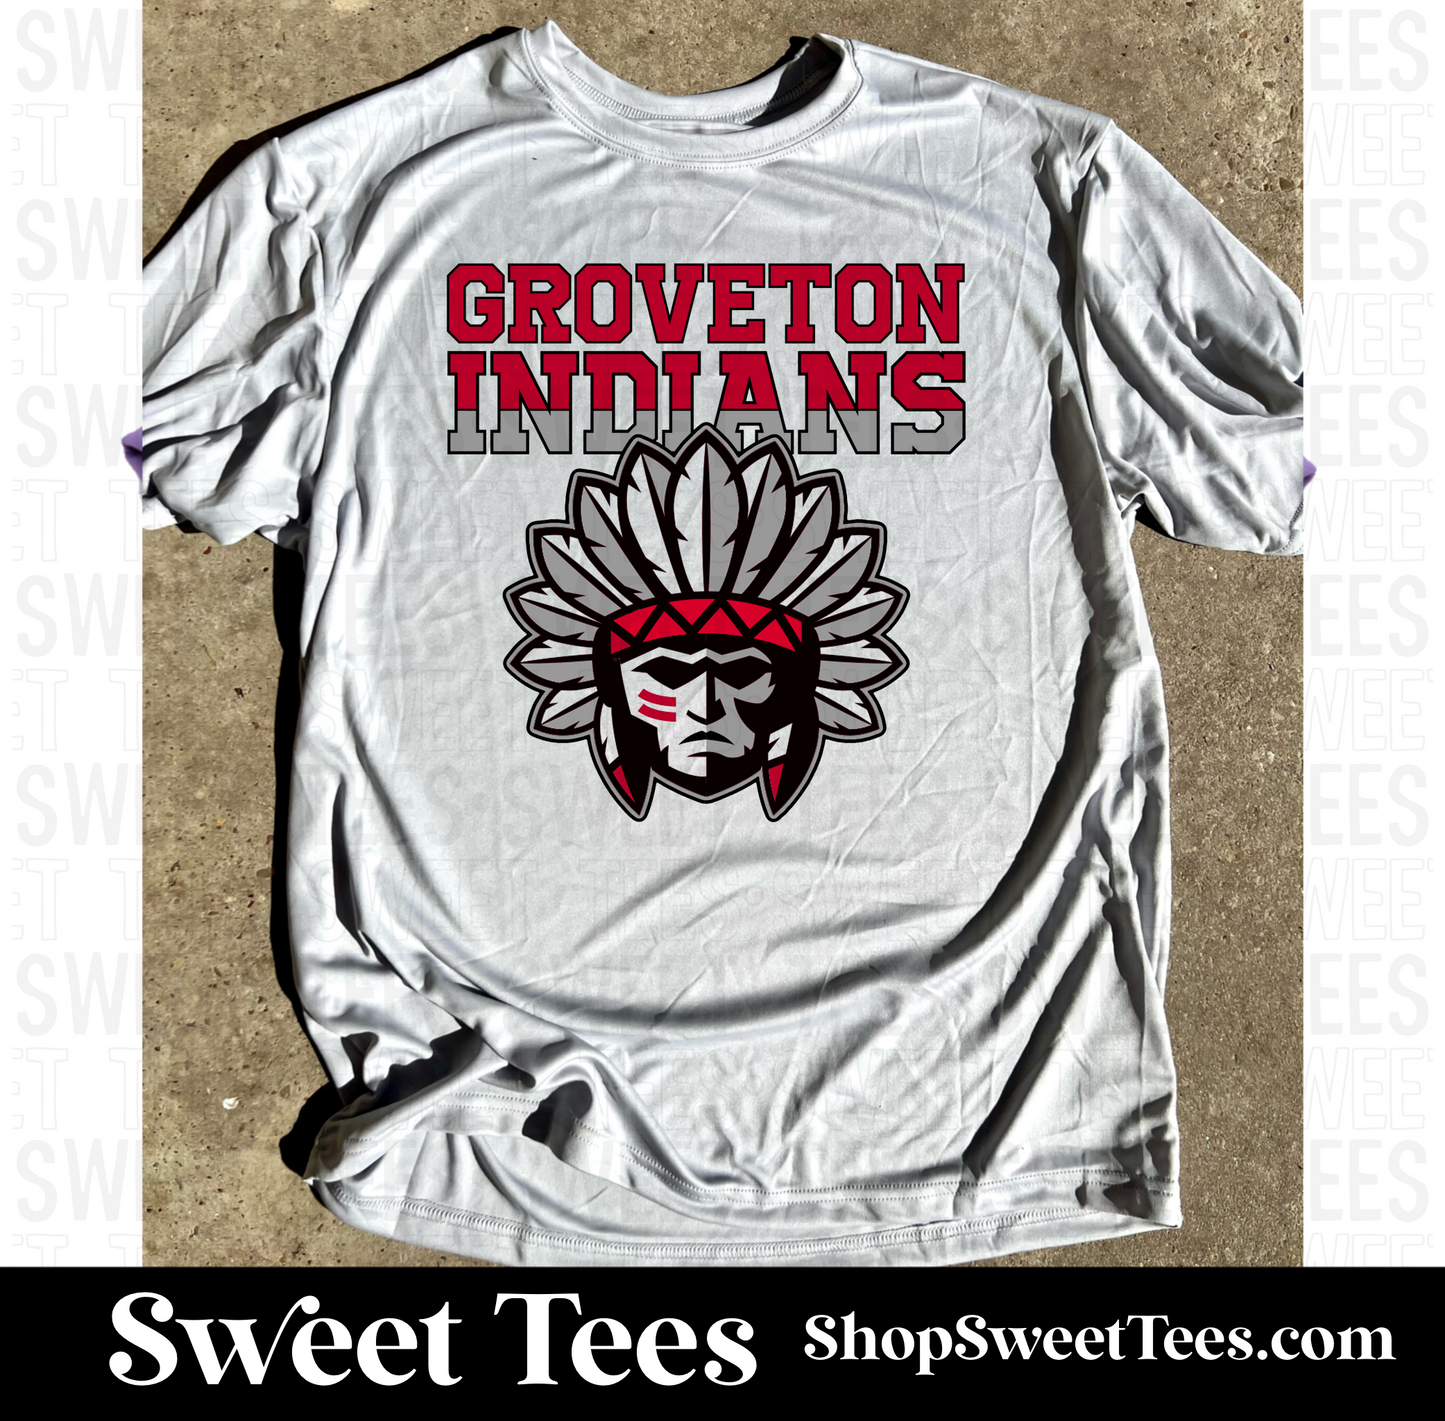 Groveton Indians Drifit tee